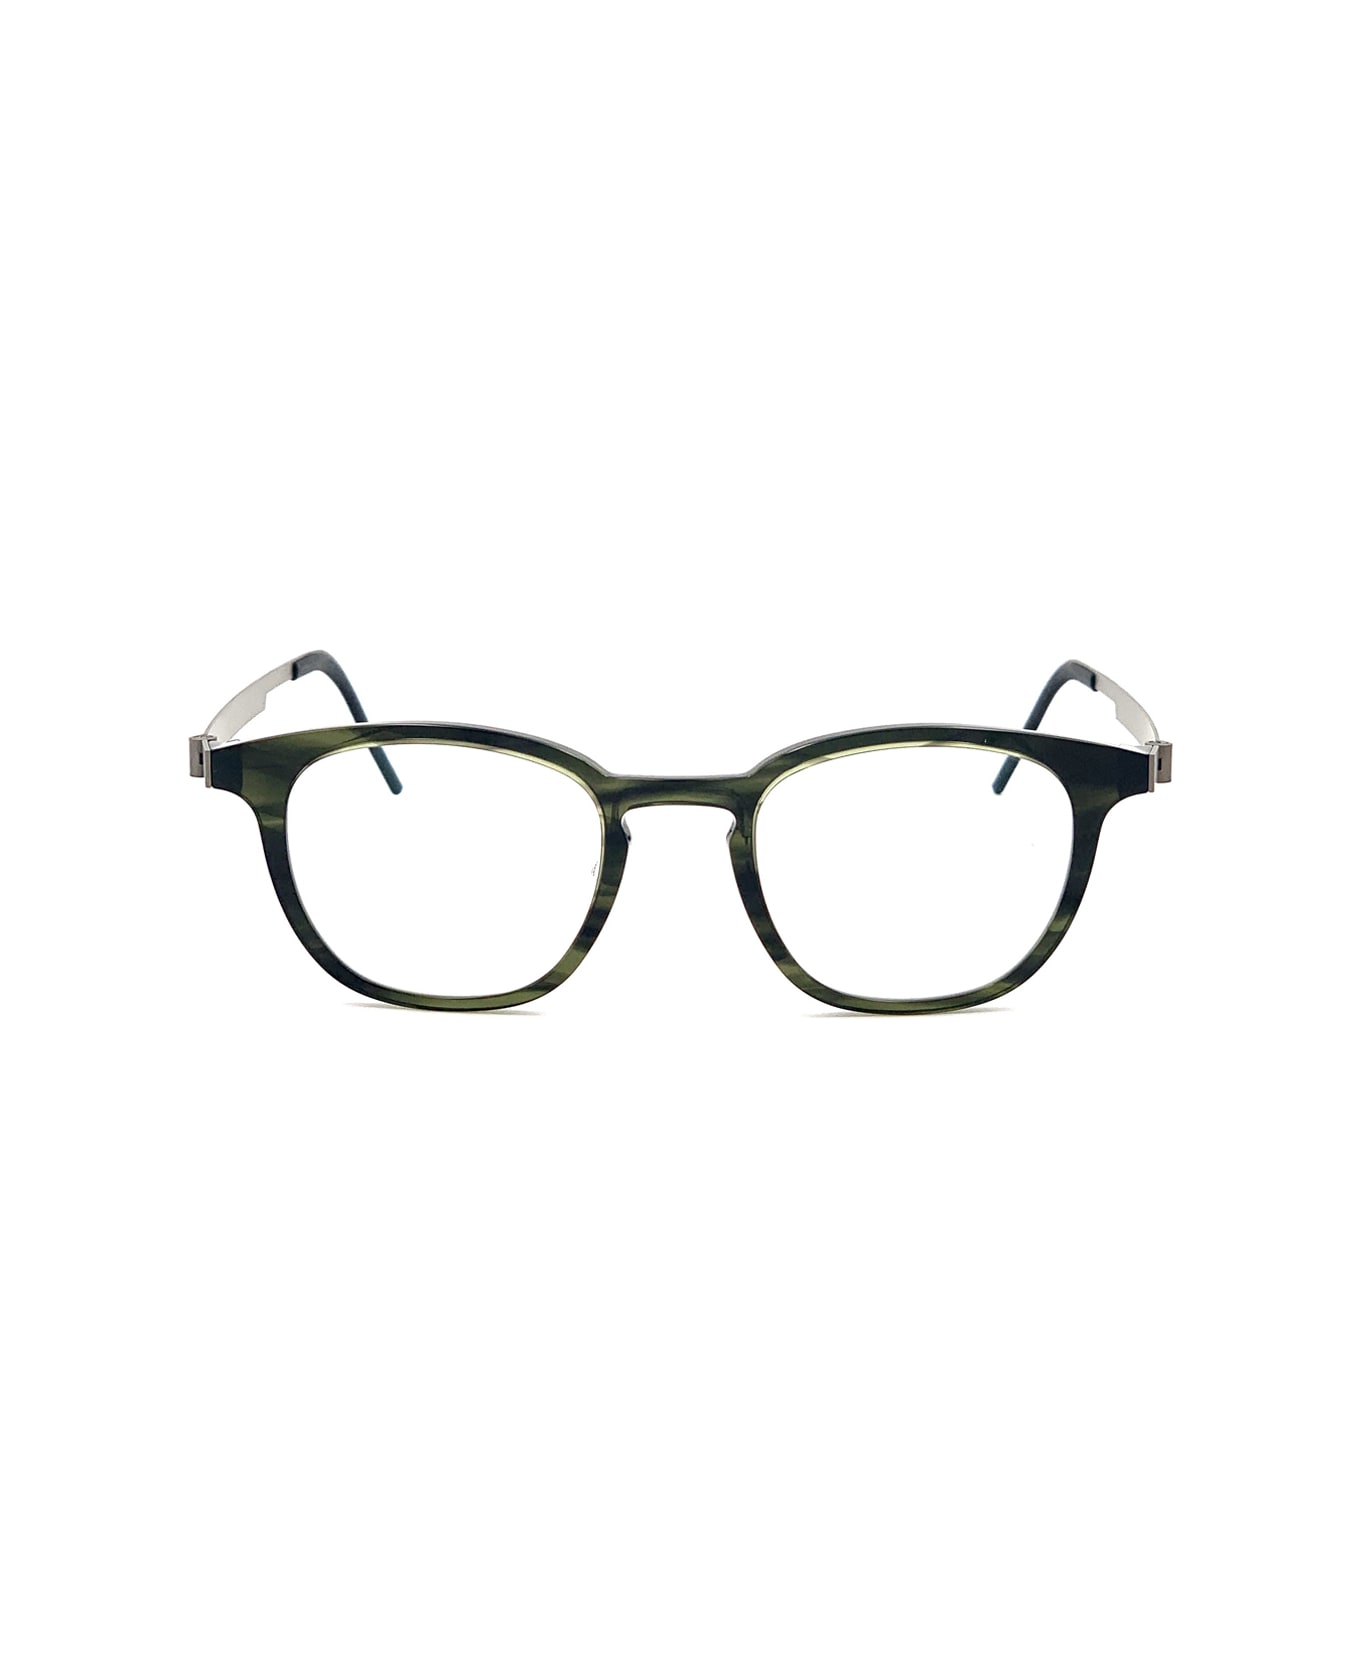 LINDBERG Acetanium 1051 Glasses - Verde